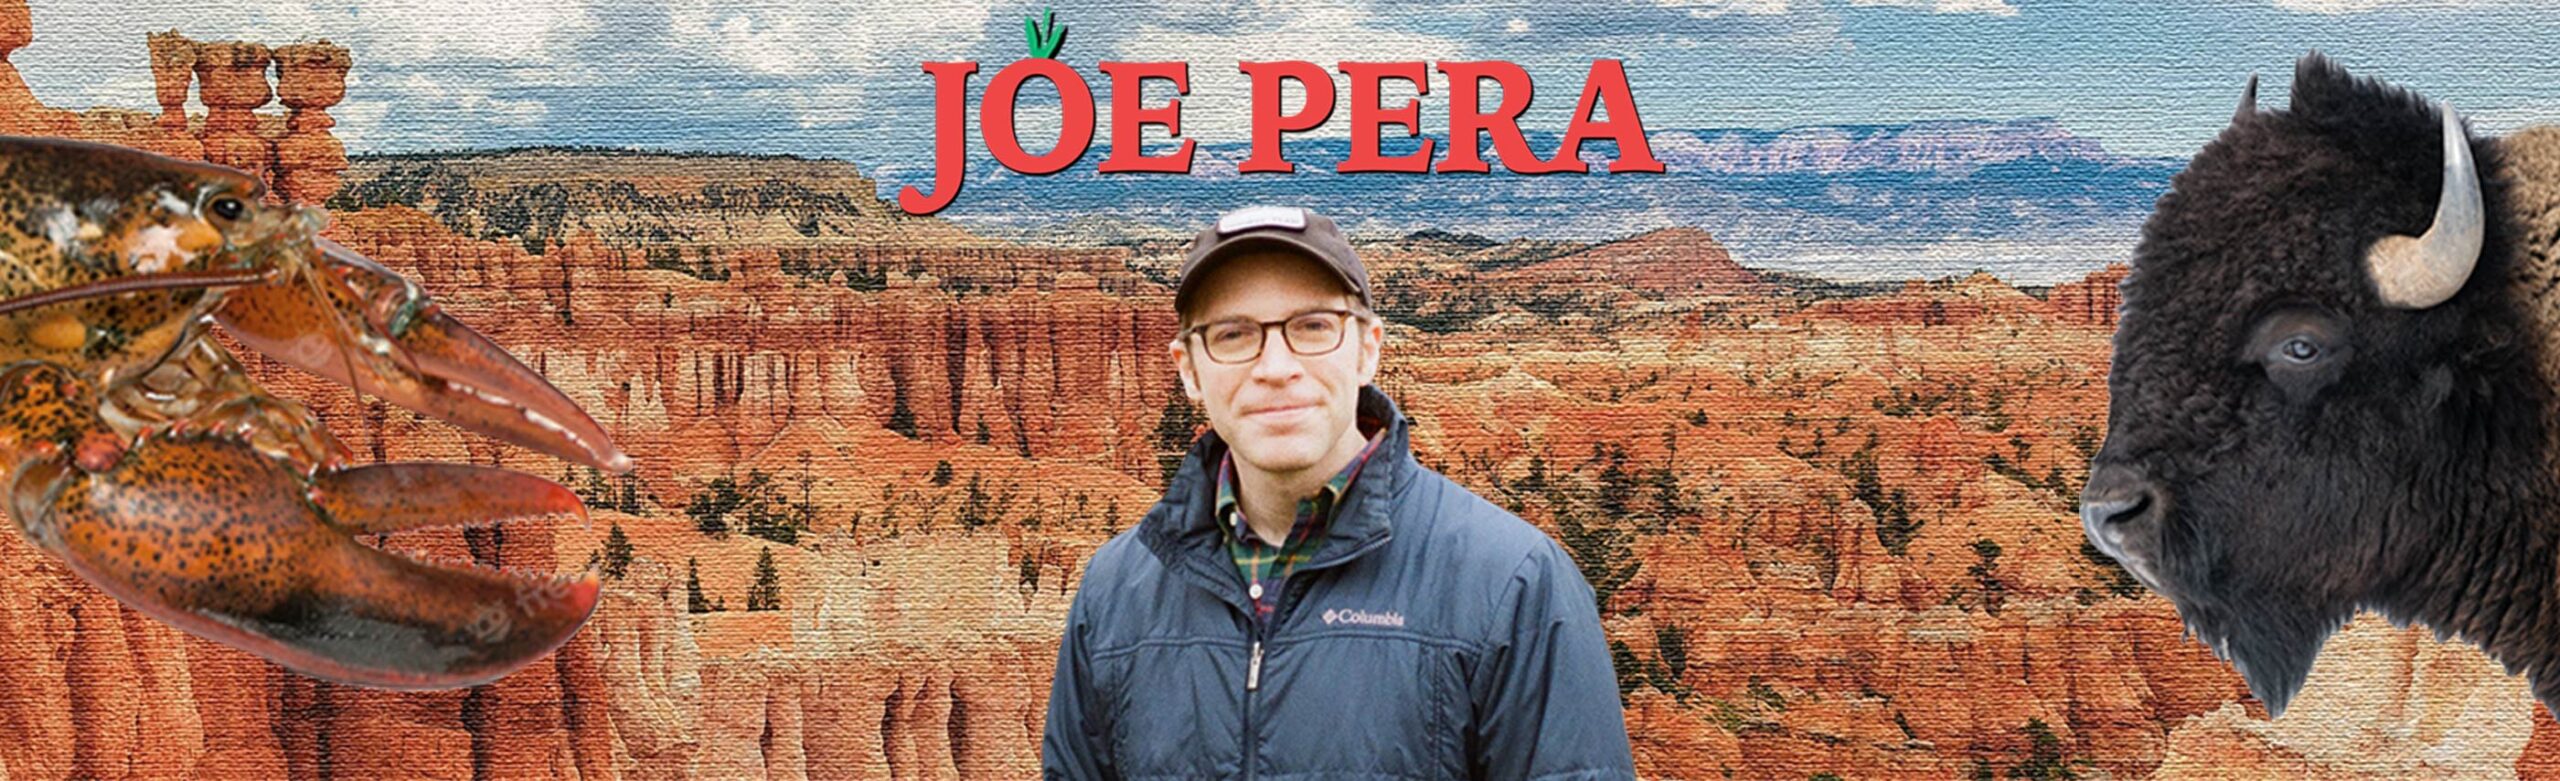 Comedian Joe Pera Confirms Show at The ELM Image